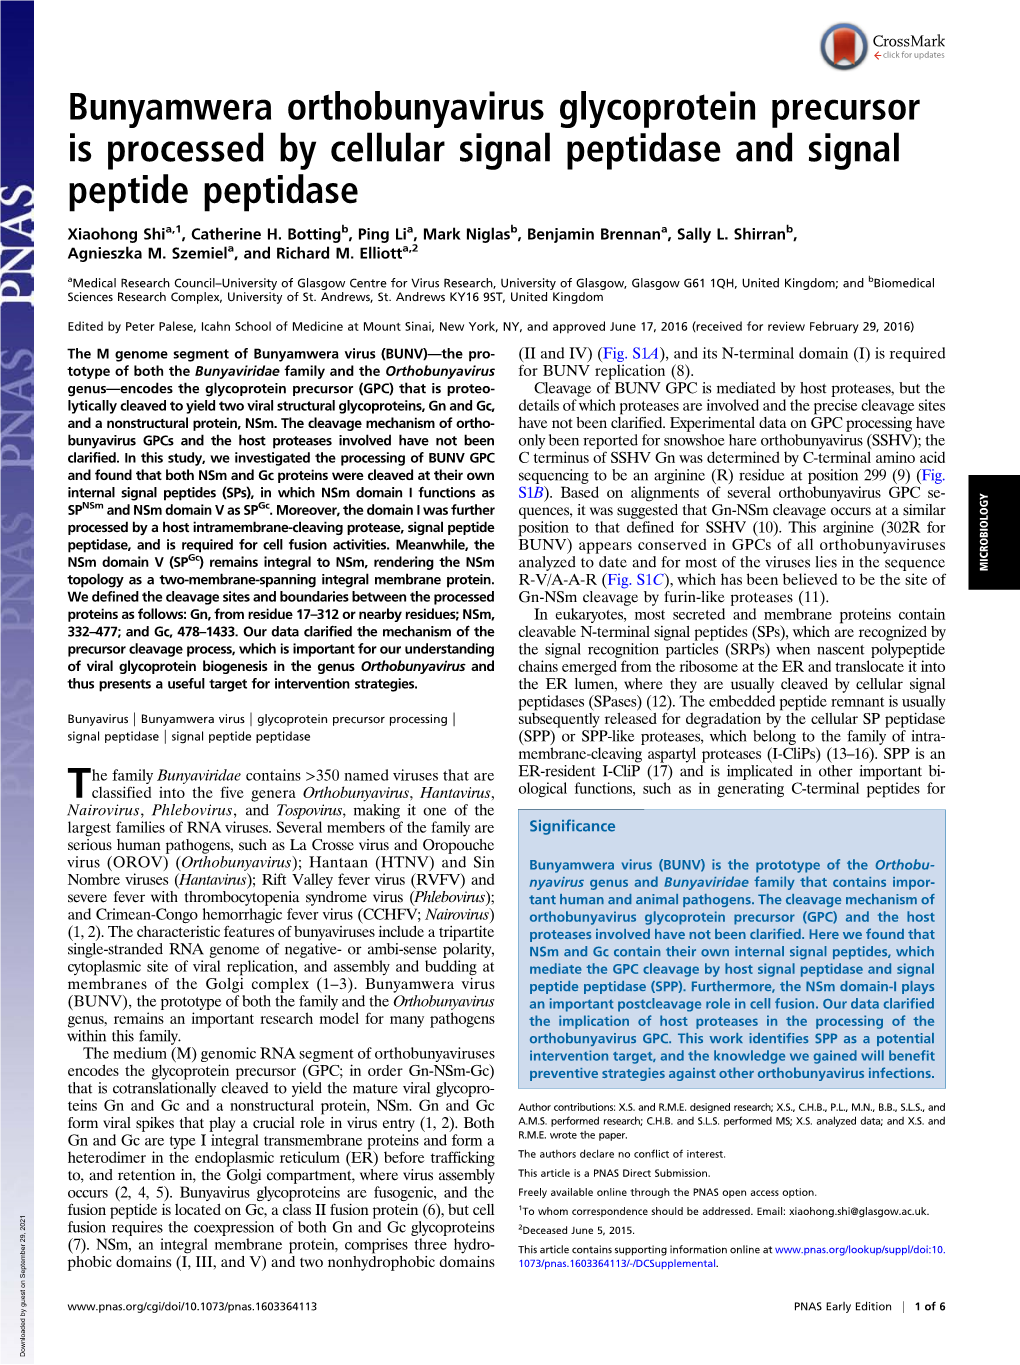 Bunyamwera Orthobunyavirus Glycoprotein Precursor Is Processed by Cellular Signal Peptidase and Signal Peptide Peptidase